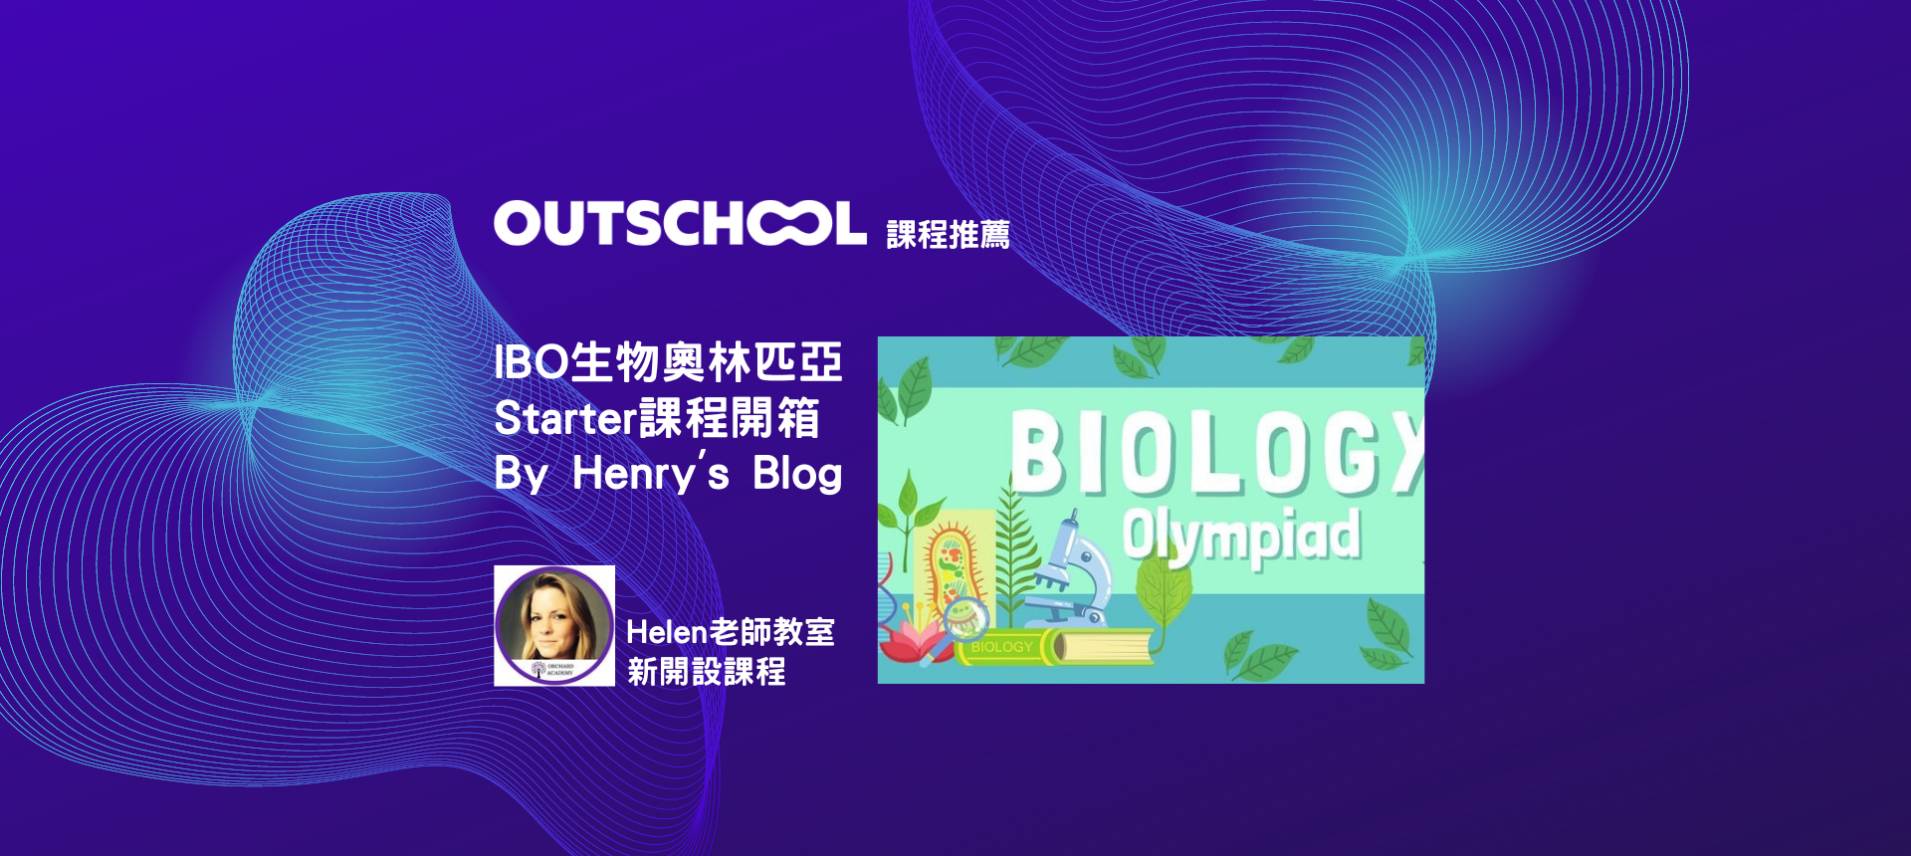 課程開箱: Let's Get Ready: Biology Olympiad Early Starters Course